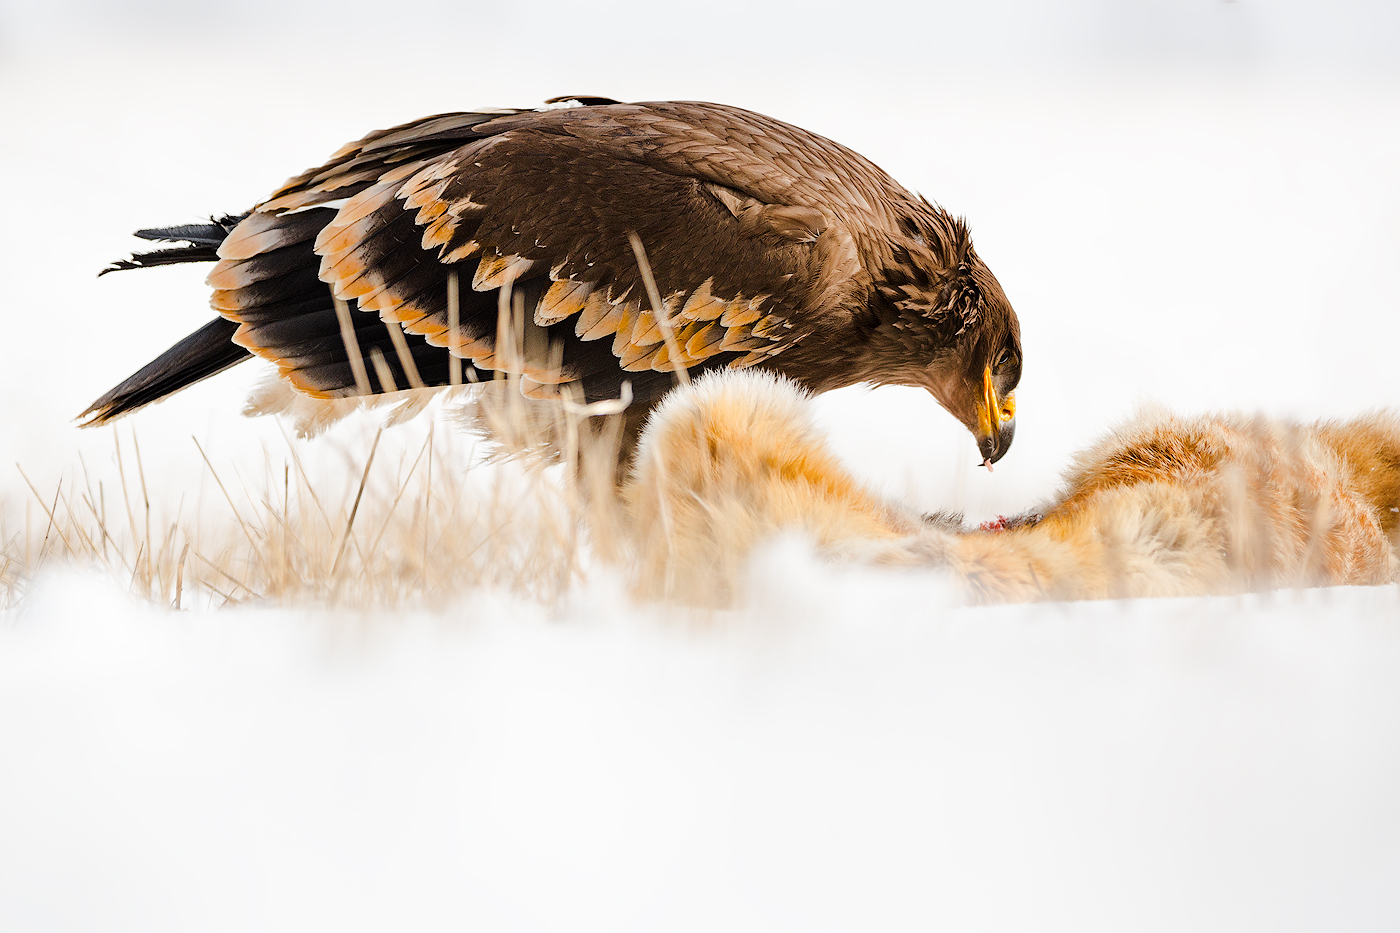 Eagle with his prey